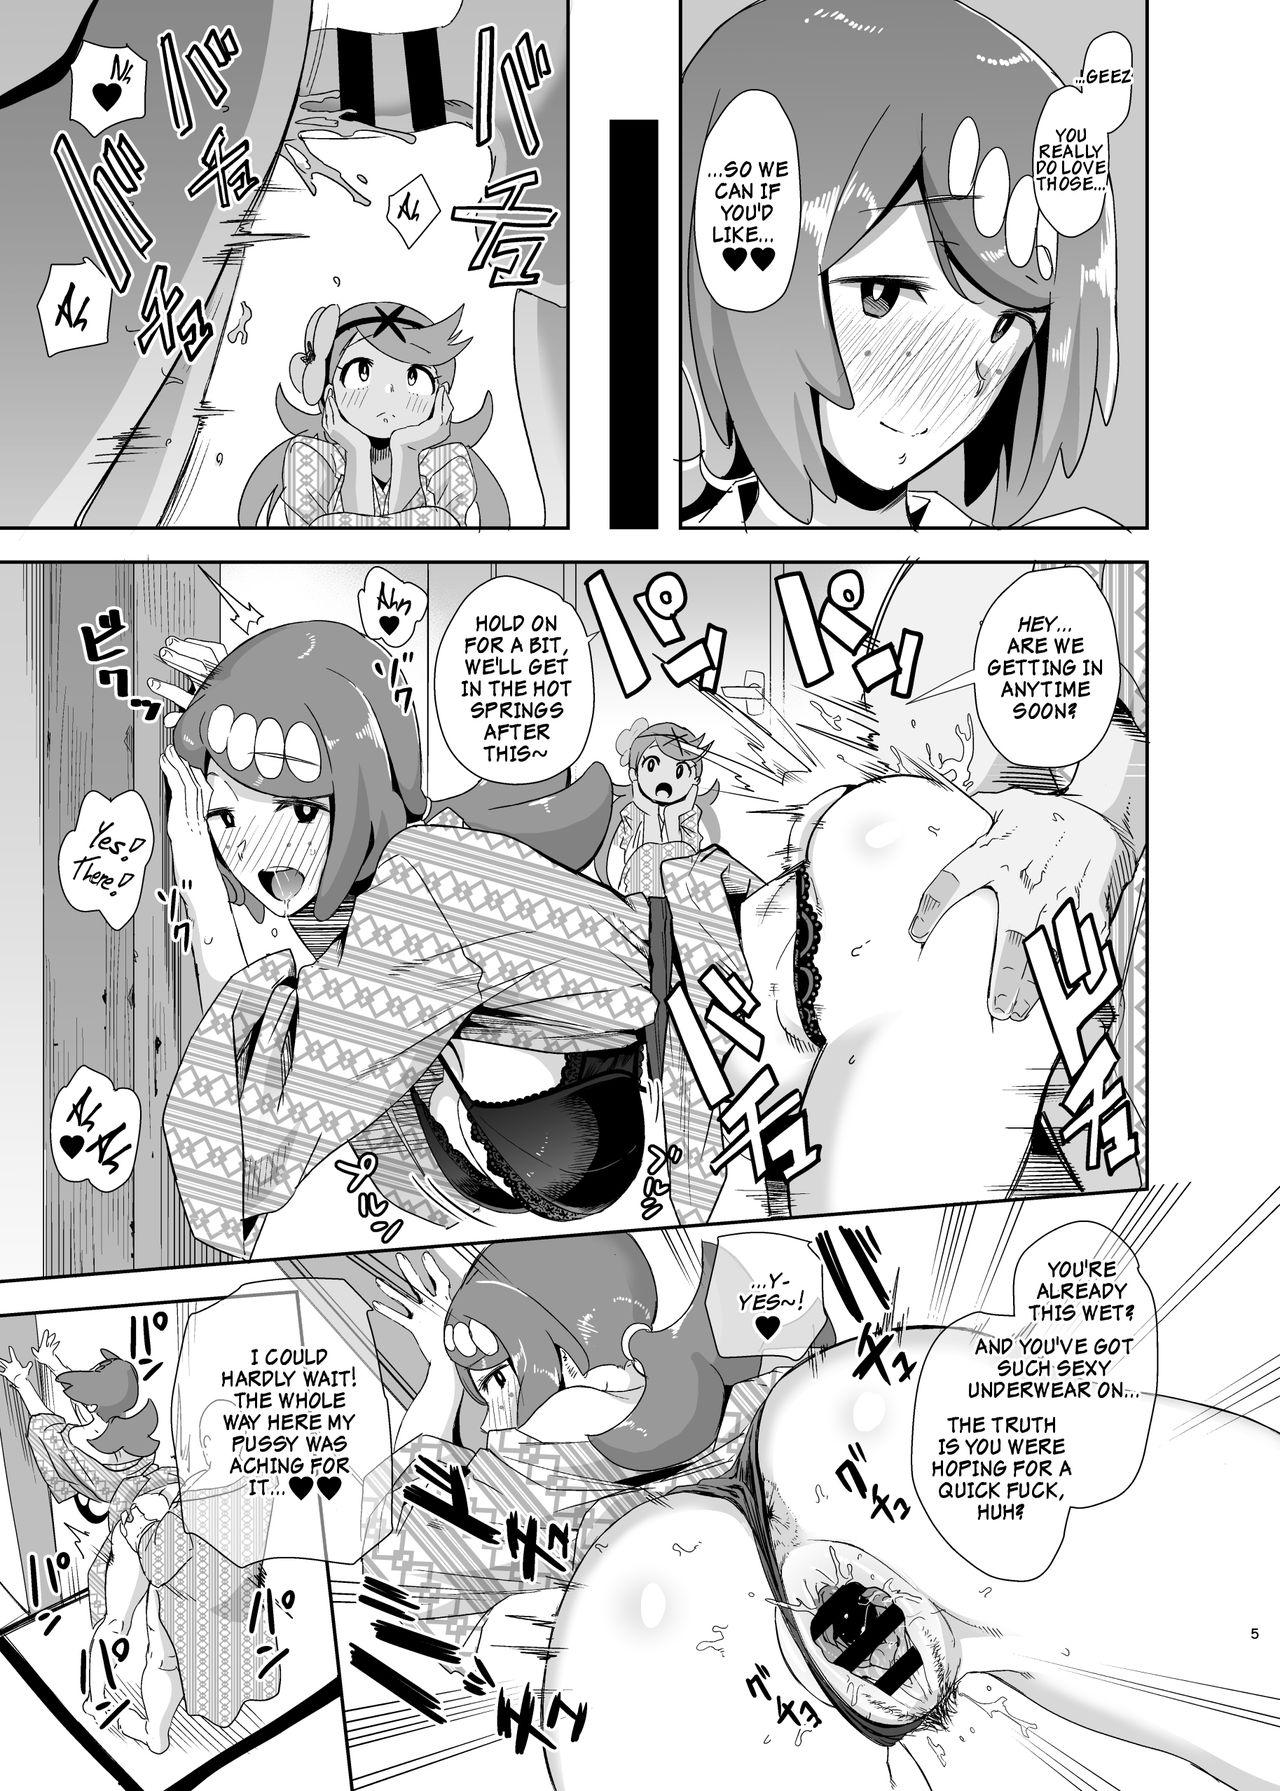 Bribe Alola no Yoru no Sugata 2 + Wicke Ver | The Feeling of Alolan Night 2 - Pokemon Licking - Page 4